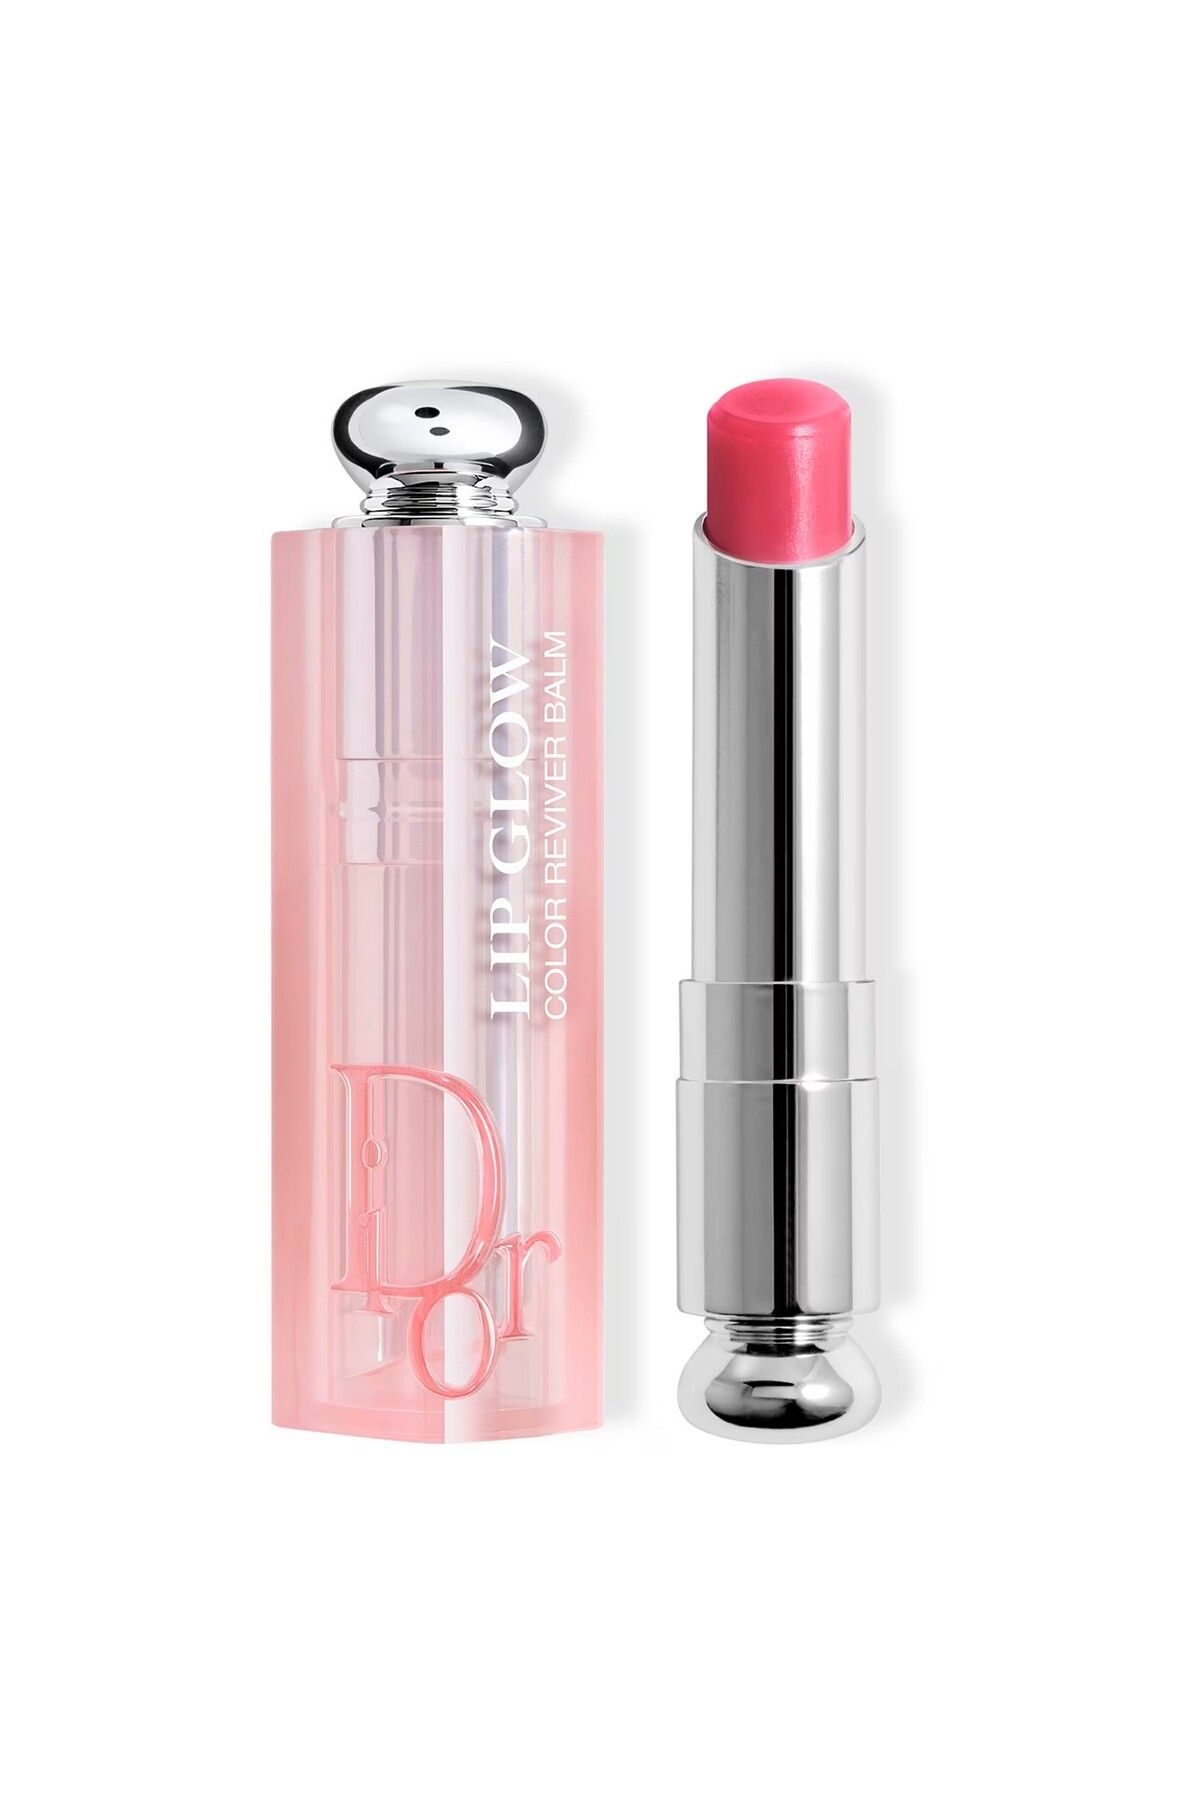 Dior Addict Lip Glow-Kiraz Yağı İçerikli 24 Saat Boyunca Nemlendirici Işıltılı Lip Glow